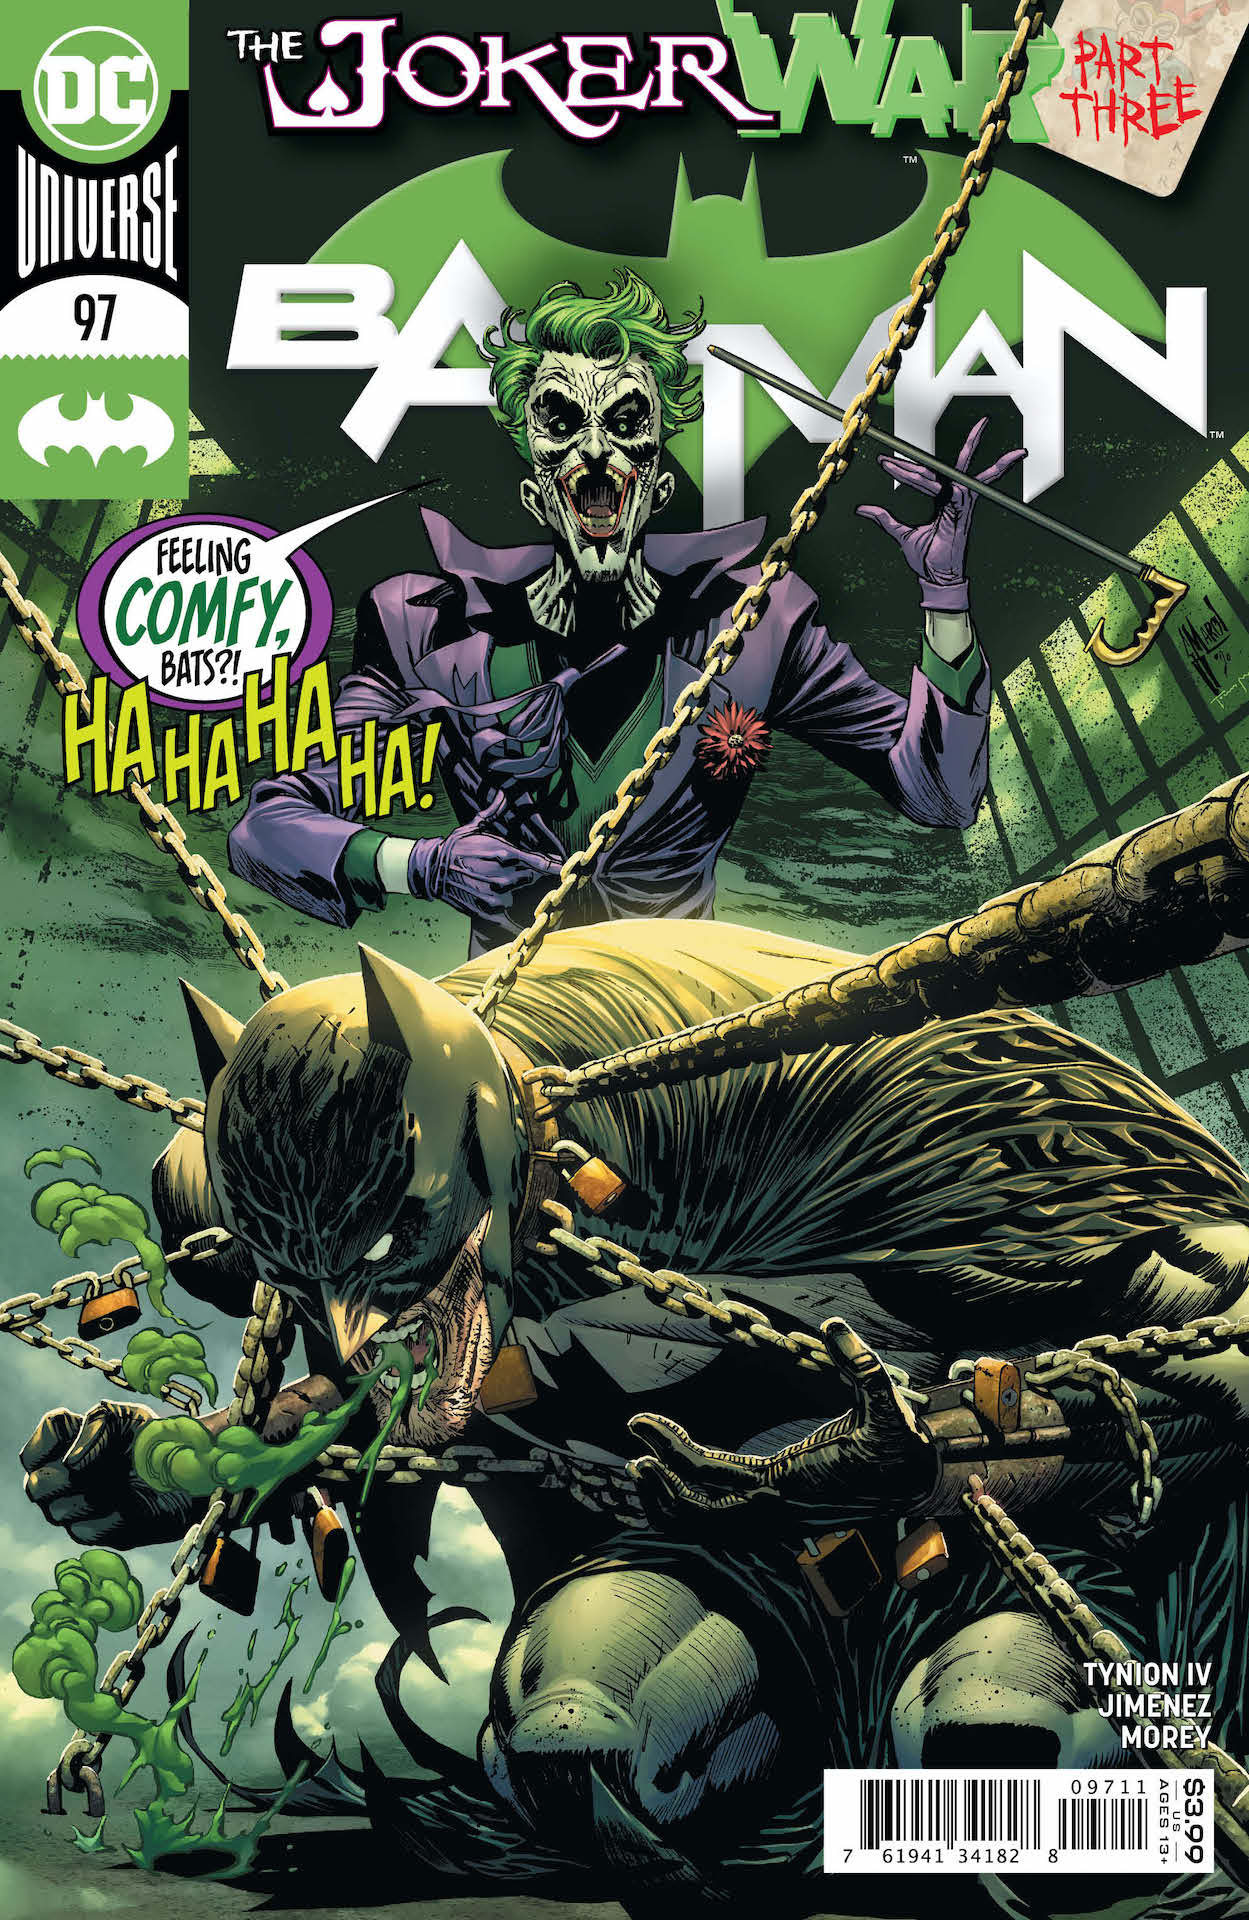 DC Preview: Batman #97